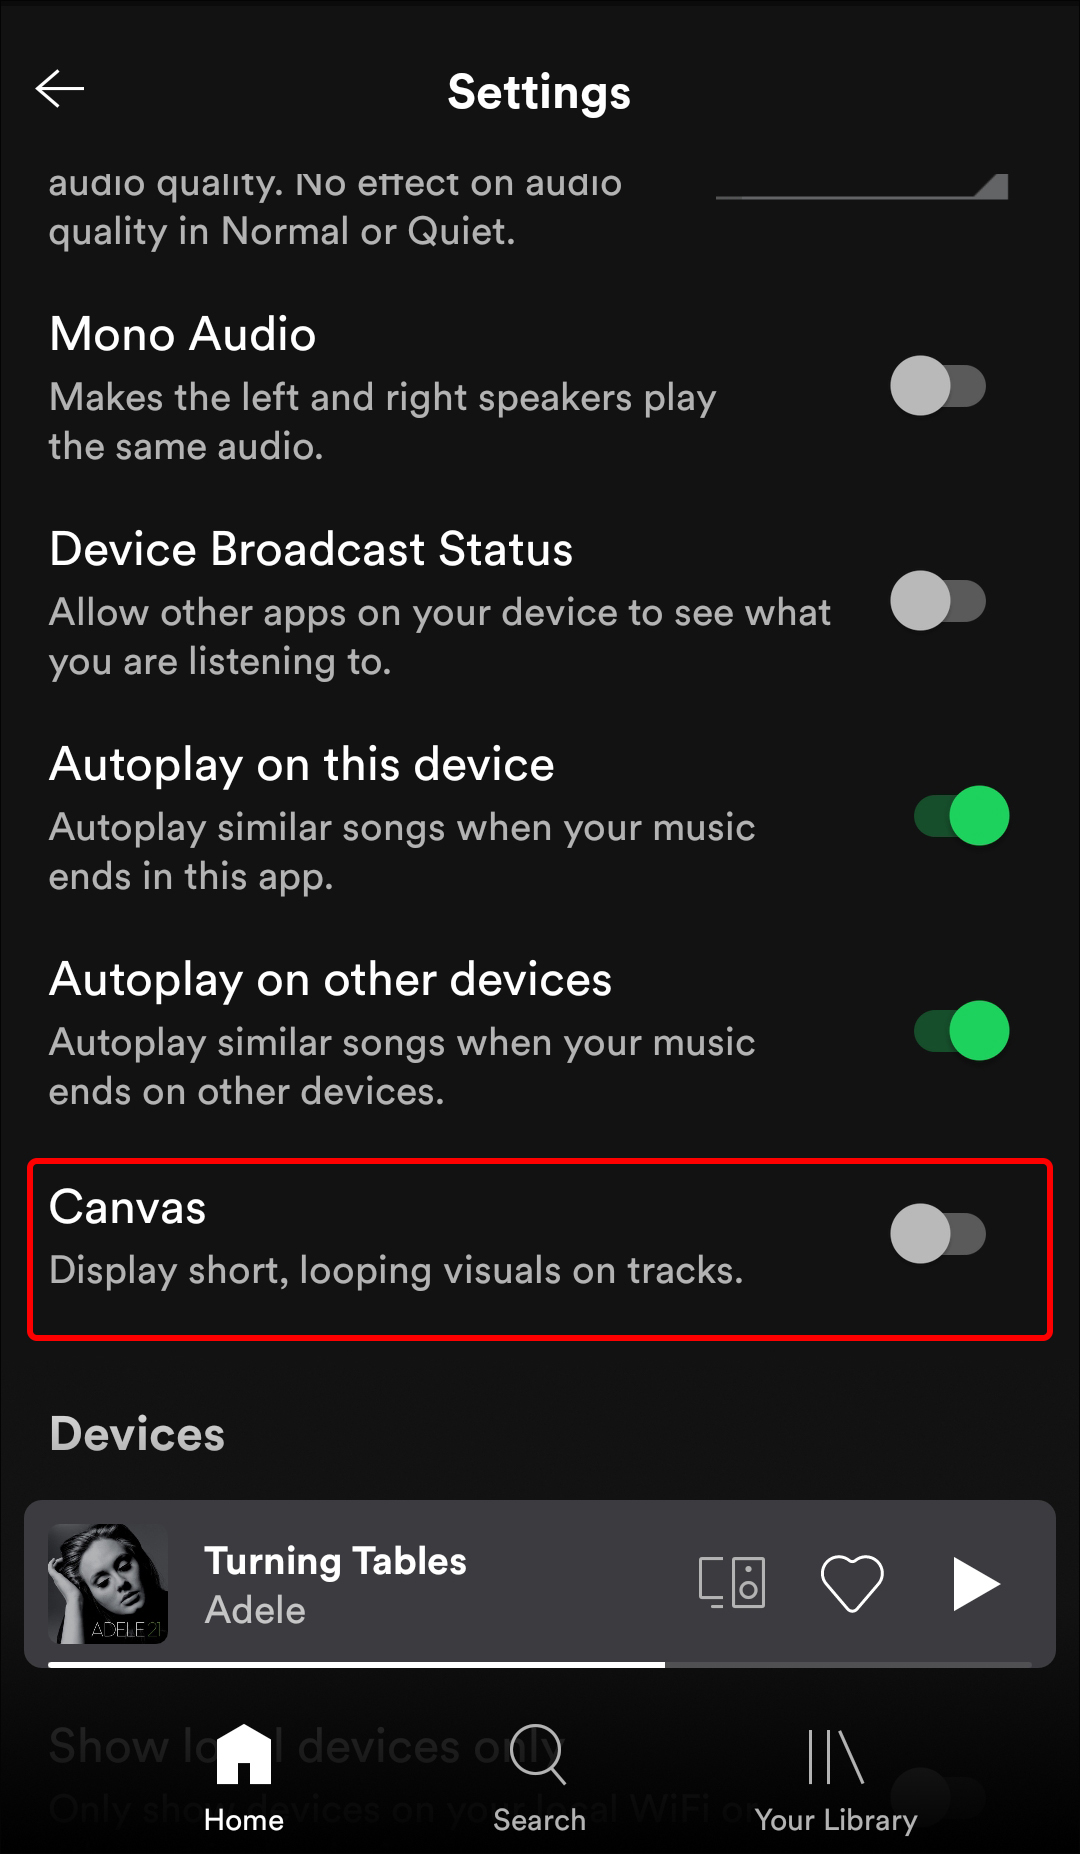 Spotify là ứng dụng phải có trên điện thoại của bạn. Tuy nhiên, nếu bạn không thích nhìn bức tranh đằng sau bài hát, bạn có thể tắt/vật lại chức năng canvas. Hãy xem hình ảnh để biết thêm chi tiết về tính năng này.